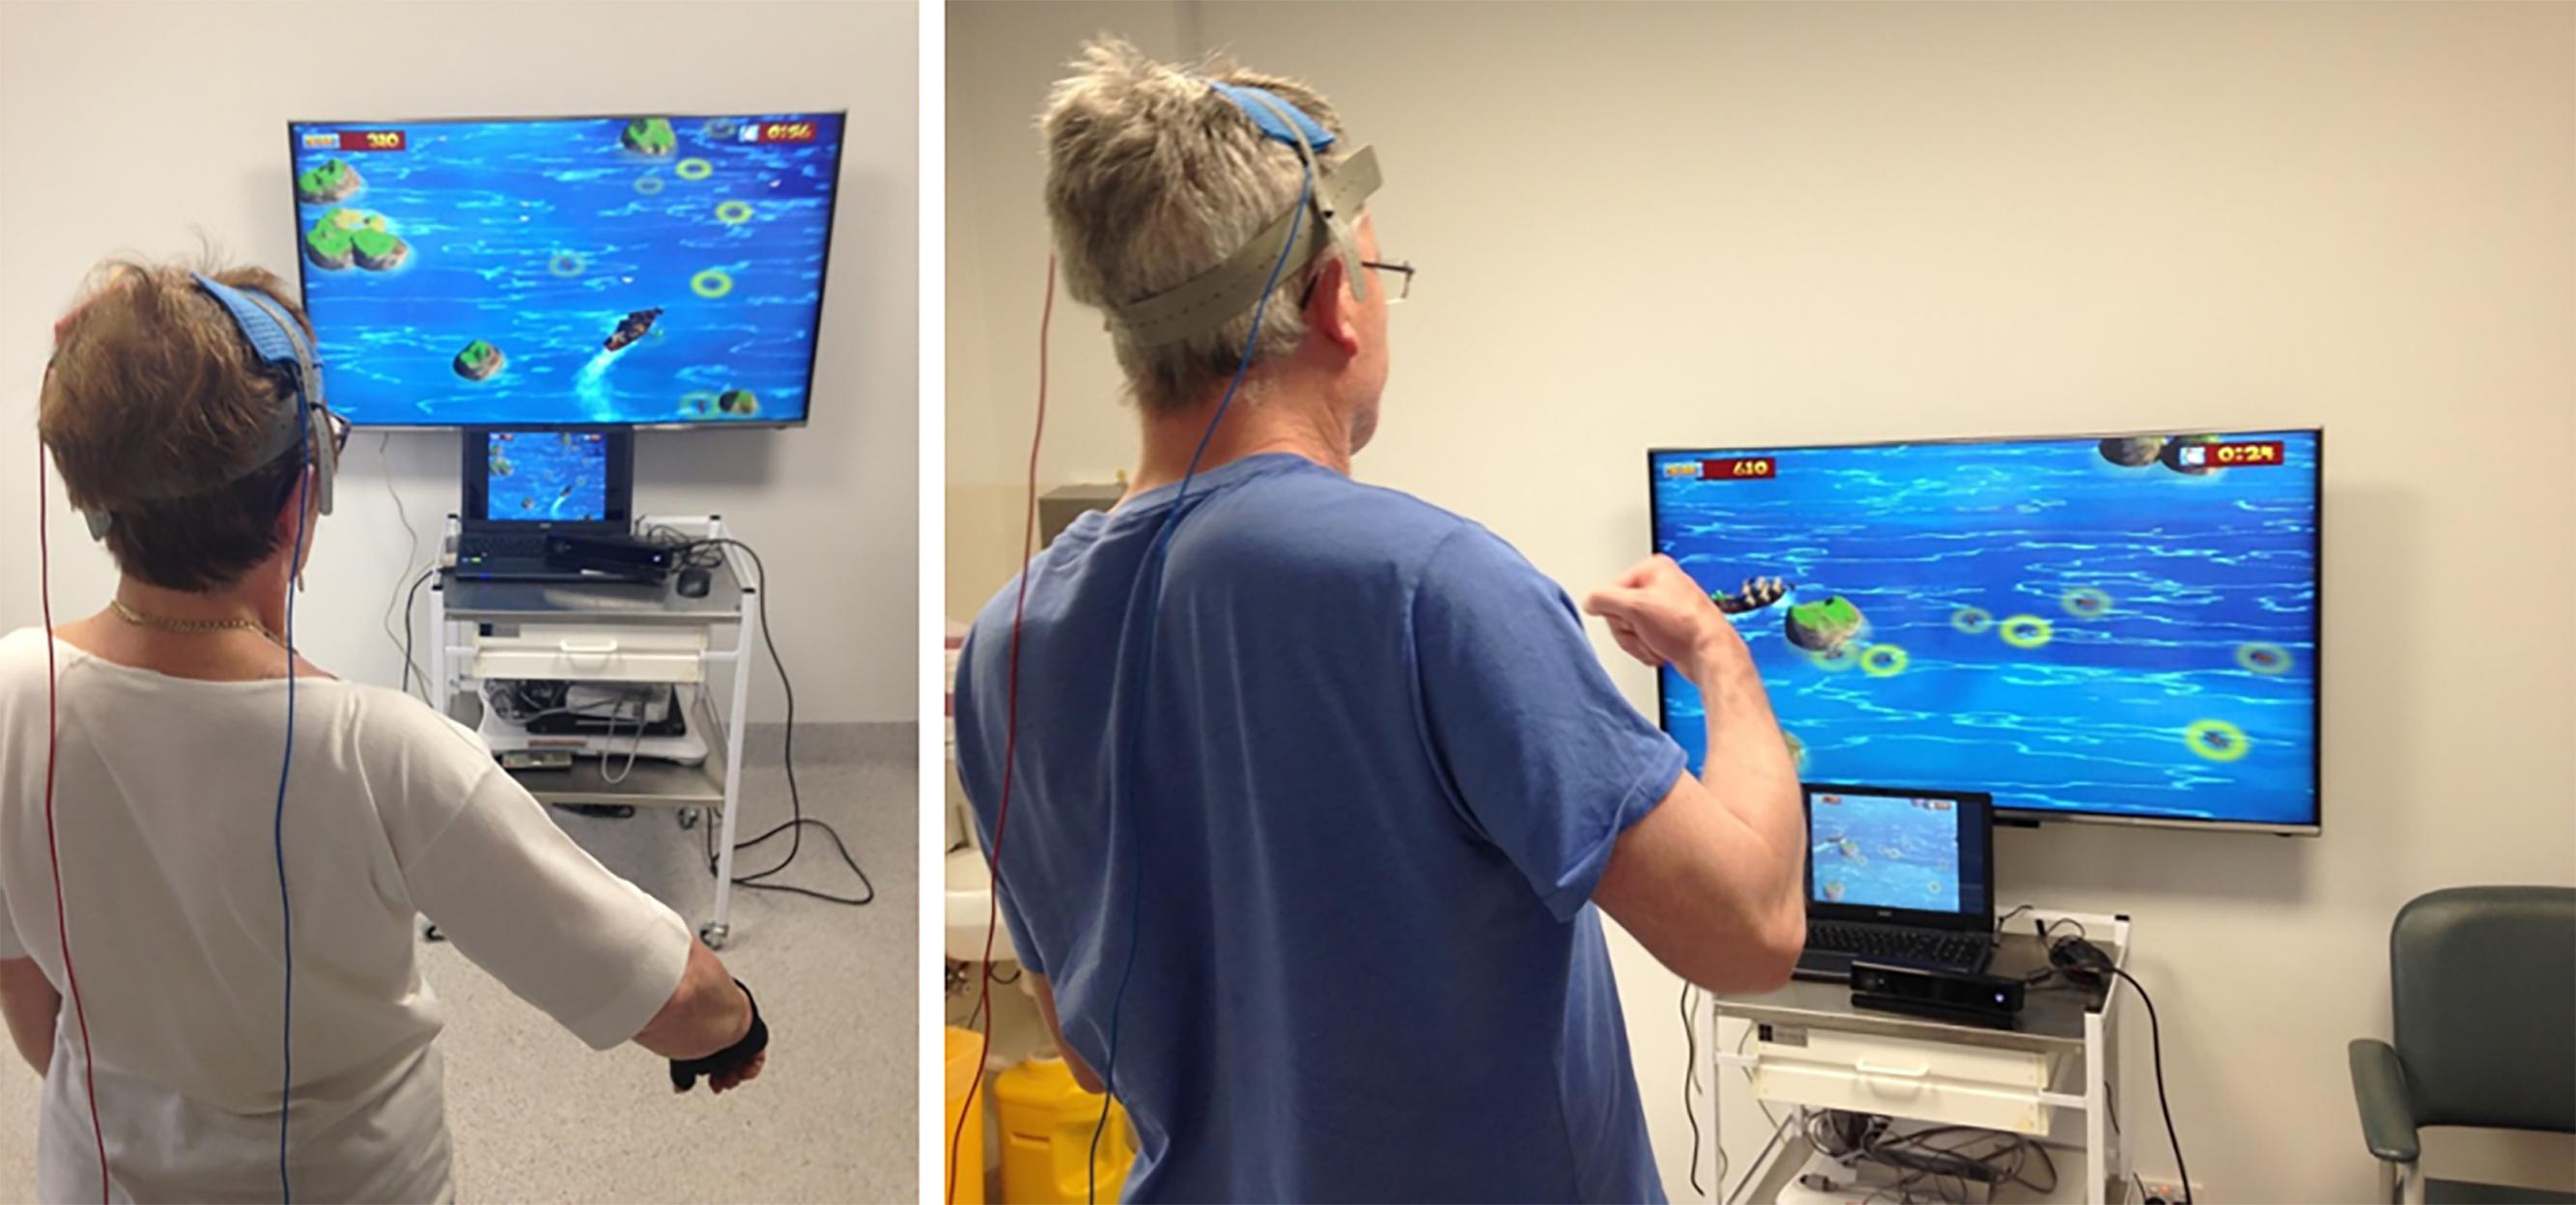 Pazienti mentre usano una terapia VR tramite un sistema X-Box Kinect motion capture. photo: journal.frontiersin.org